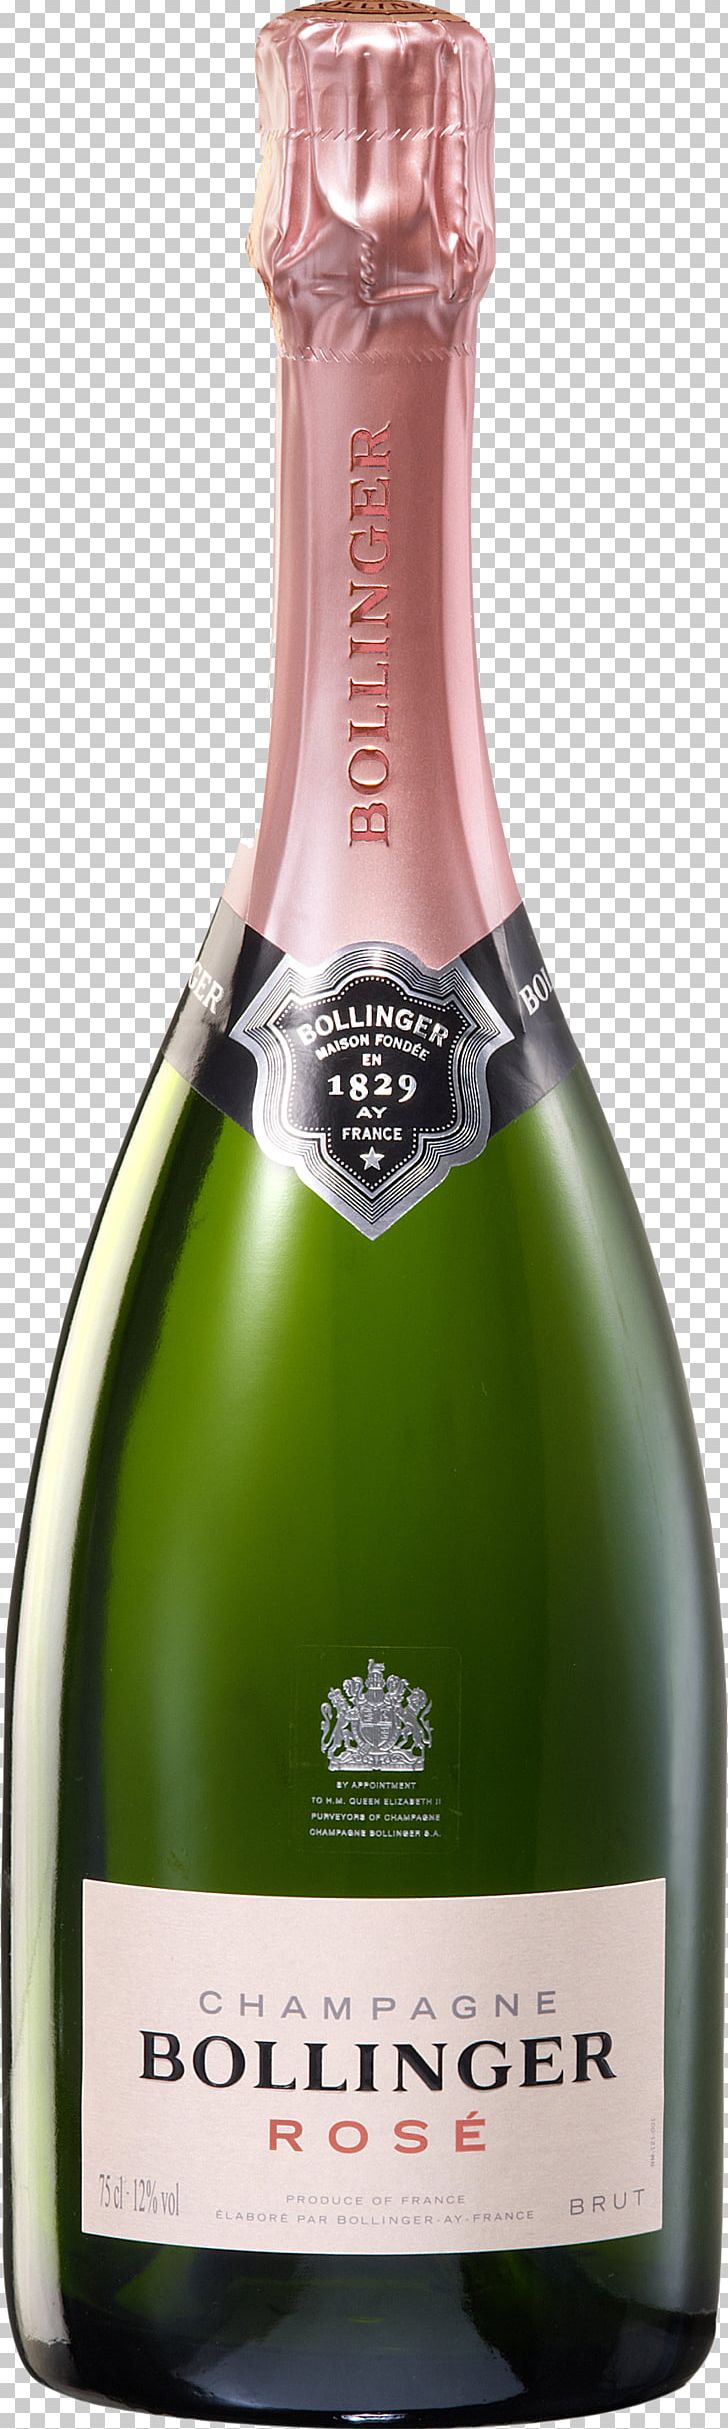 Bollinger Champagne Rosé Sparkling Wine PNG, Clipart, Alcoholic Beverage, Bollinger, Bottle, Brut, Champagne Free PNG Download